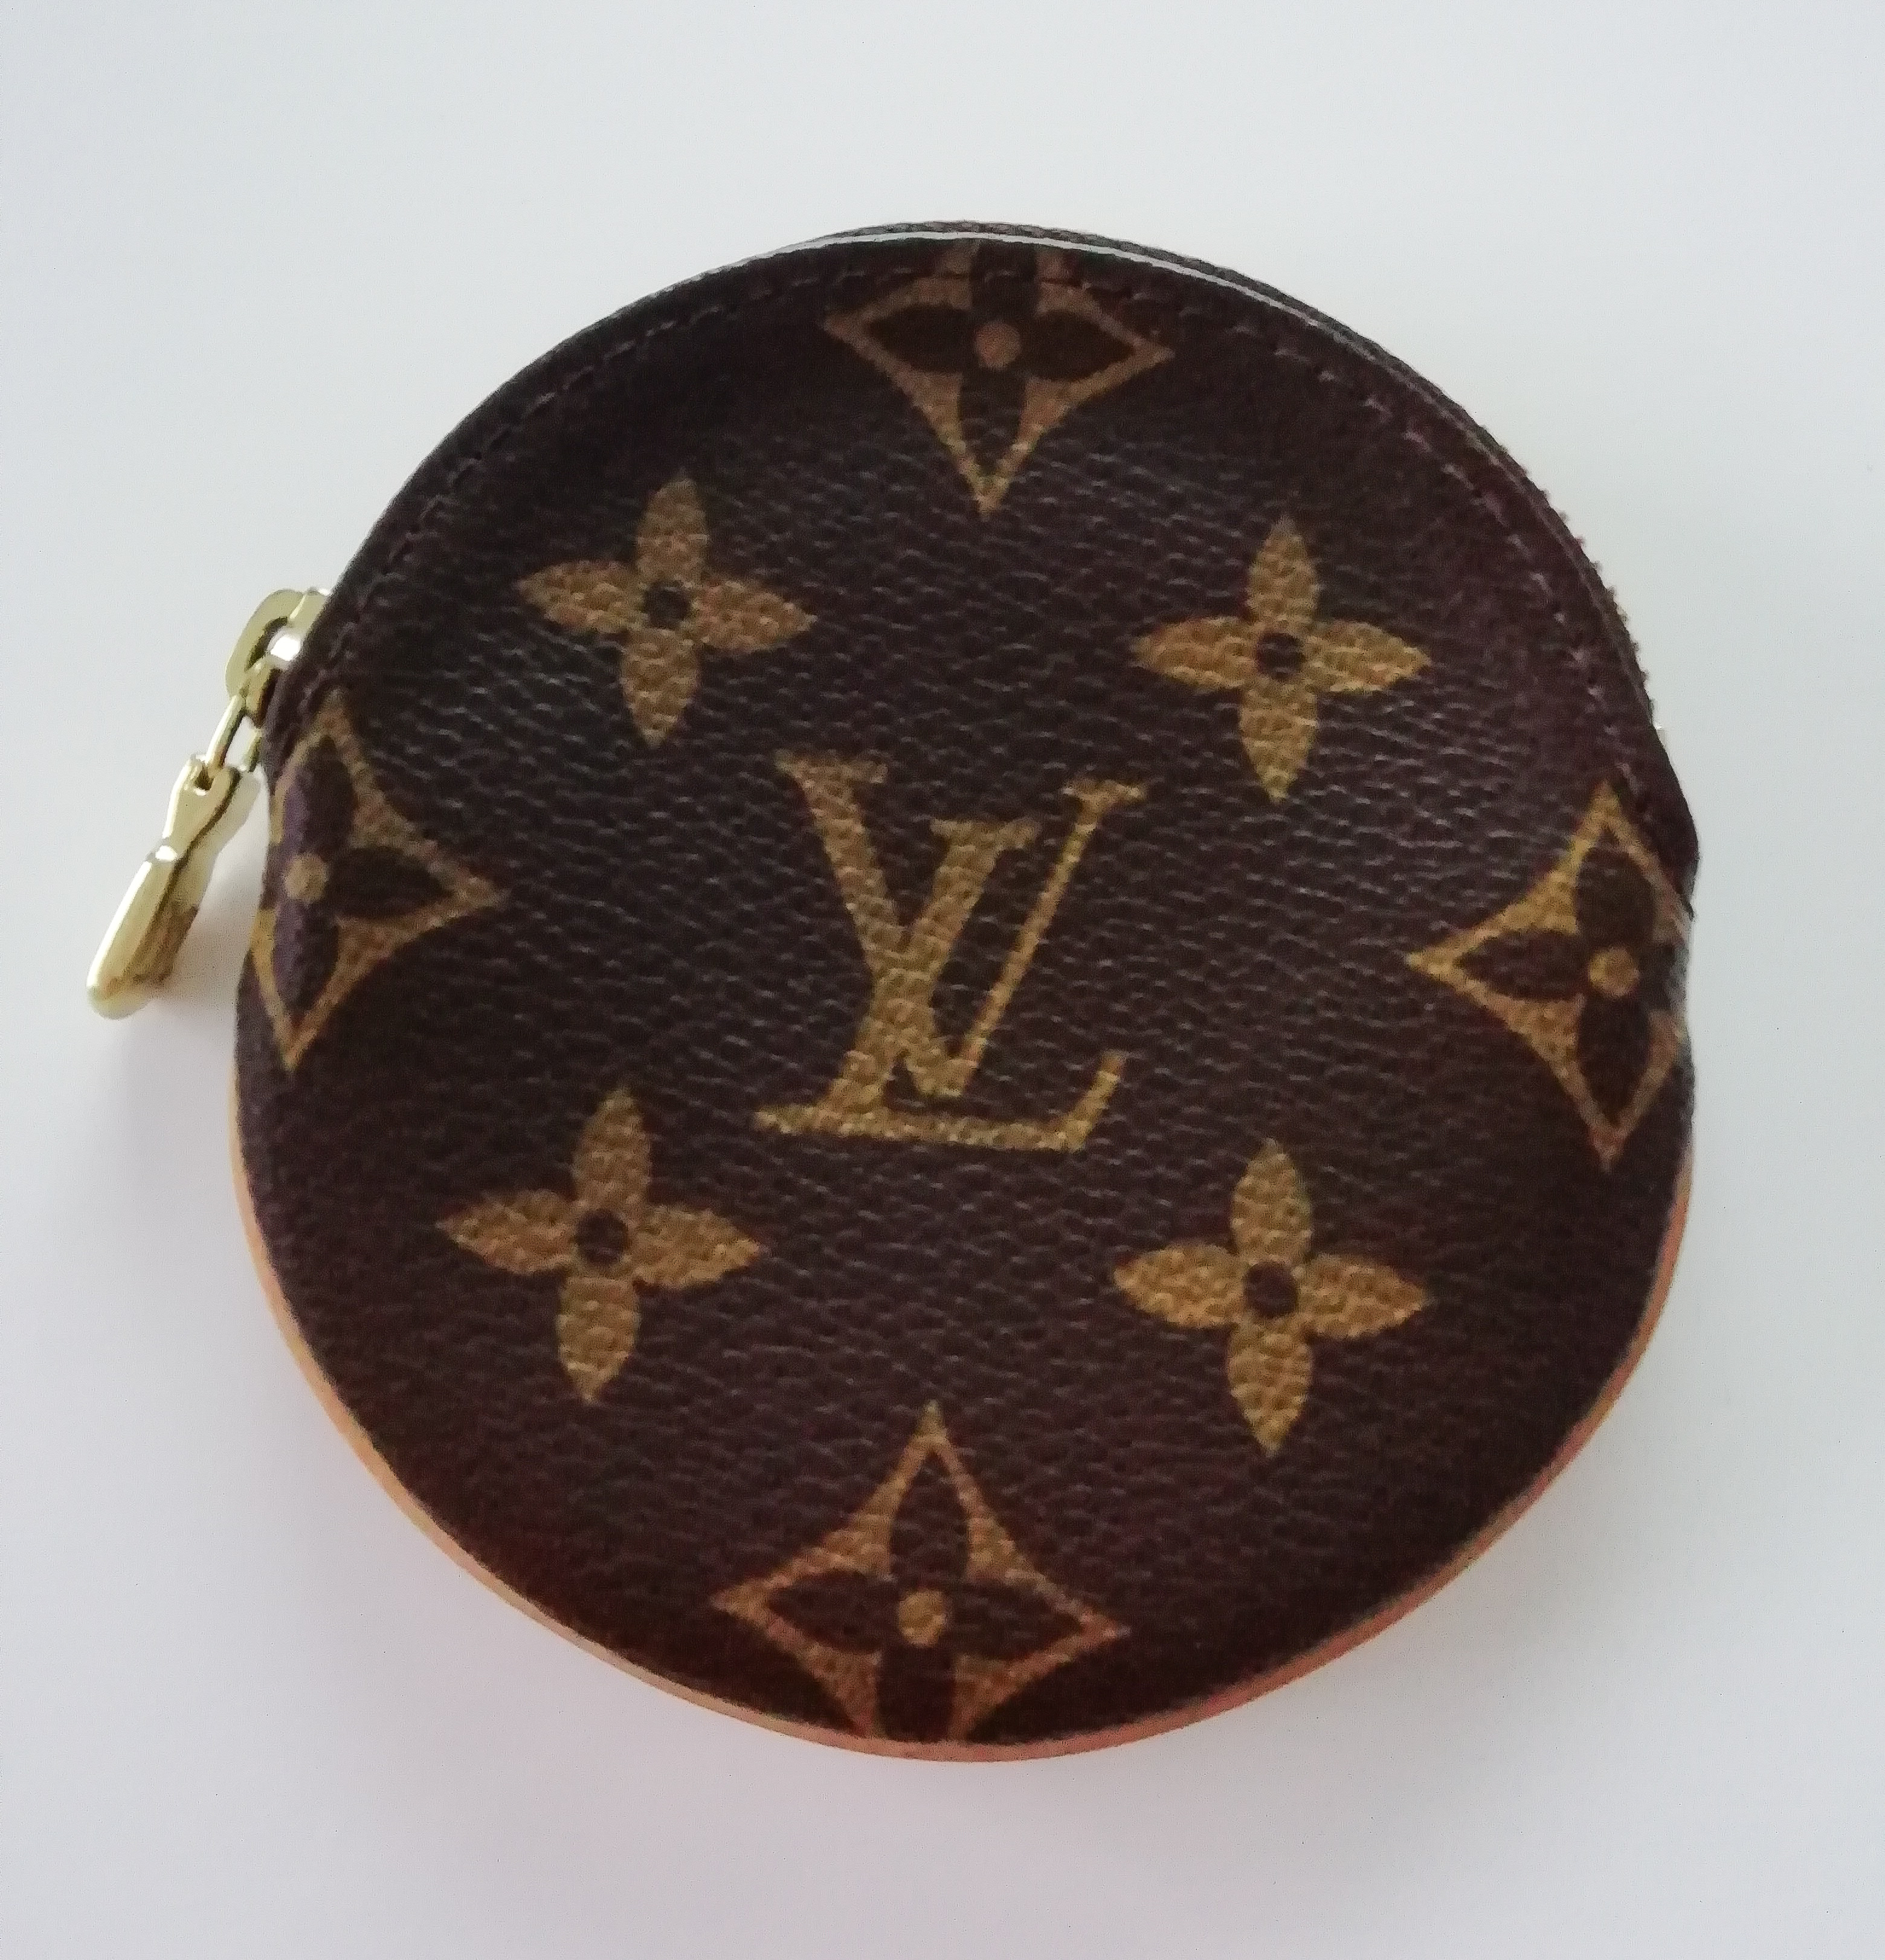 Louis Vuitton Empreinte Zippy Coin Purse in Tan | Handbag Clinic